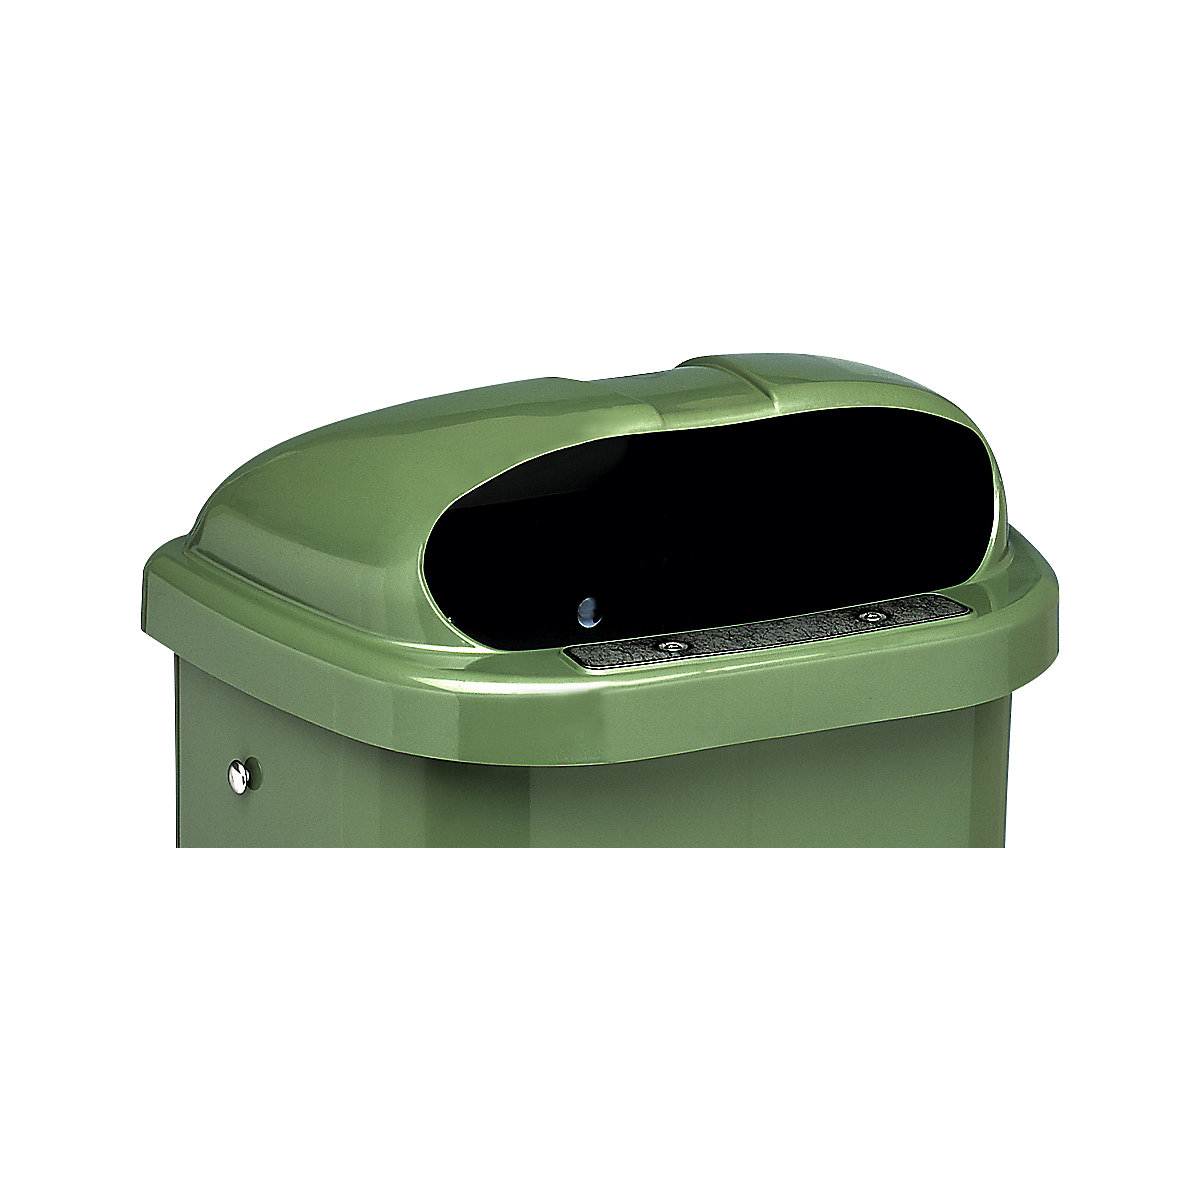 Capac de schimb pentru coșuri de gunoi standard DIN, incl. încuietoare și placă de tablă pentru stingerea țigărilor, verde-1